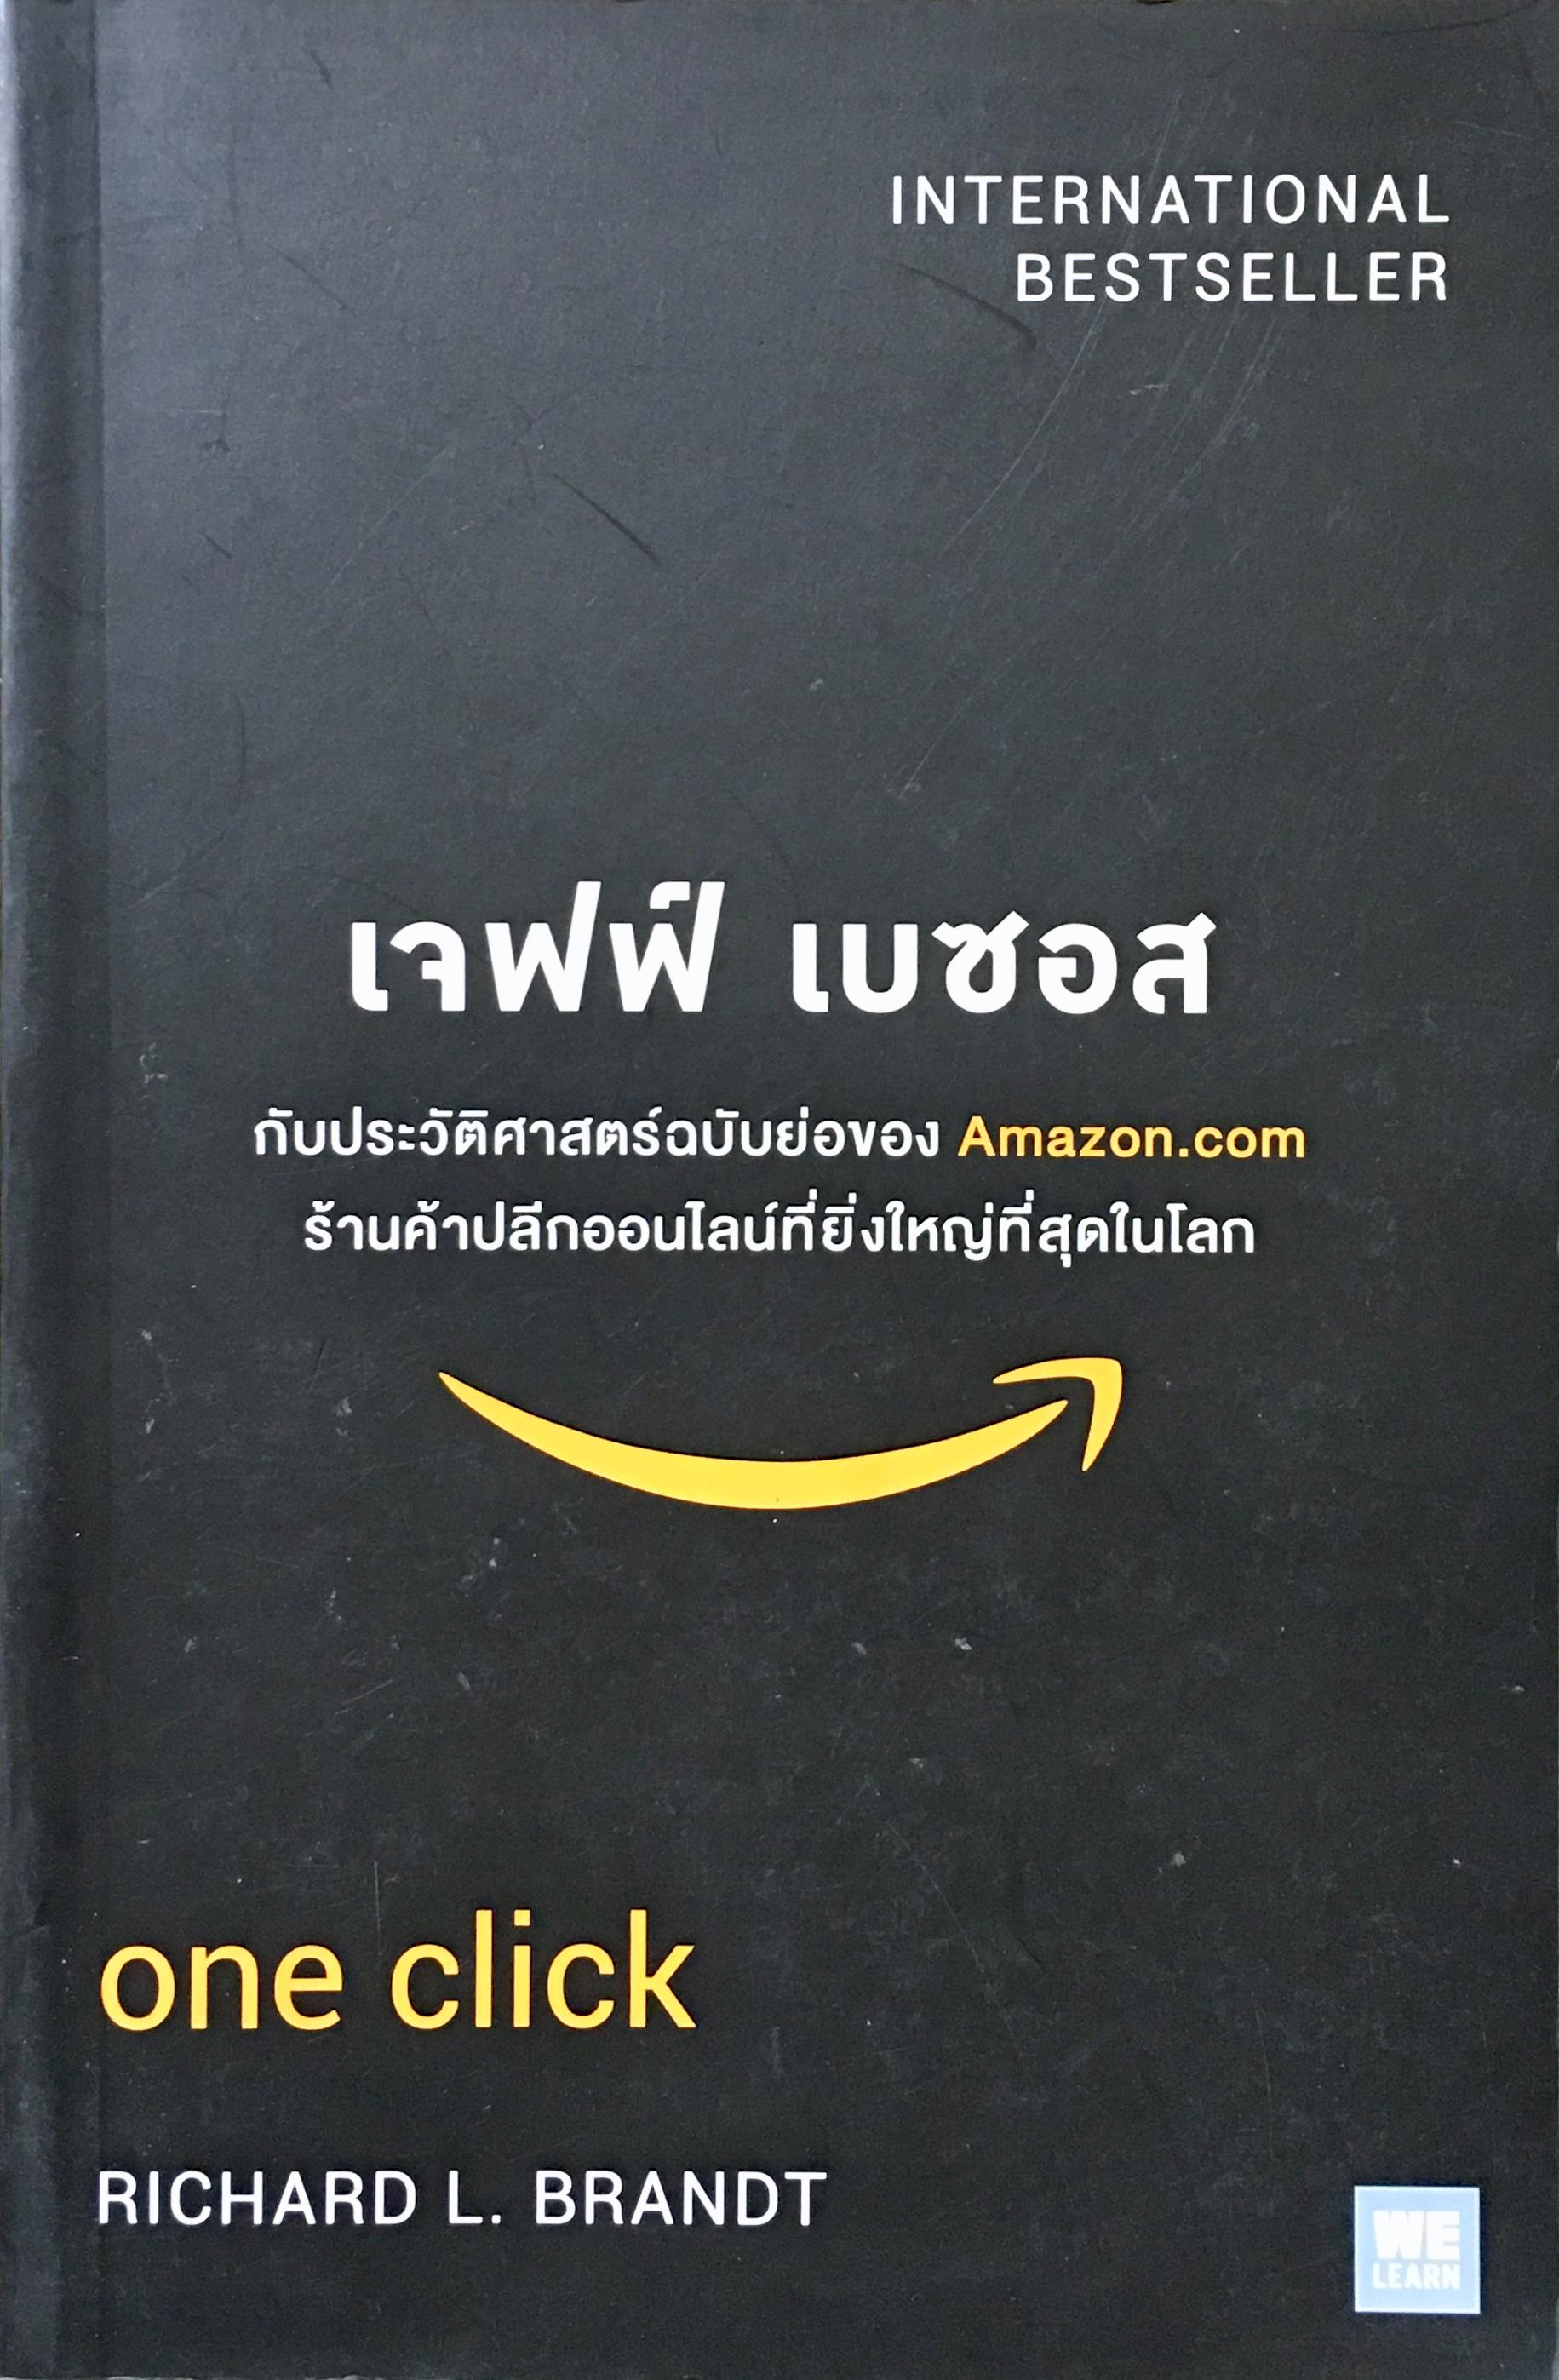 เจฟฟ์ เบซอส กับประวัติศาสตร์ฉบับย่อของ Amazon.com ร้านค้าปลีกออนไลน์ที่ยิ่งใหญ่ที่สุดในโลก one click